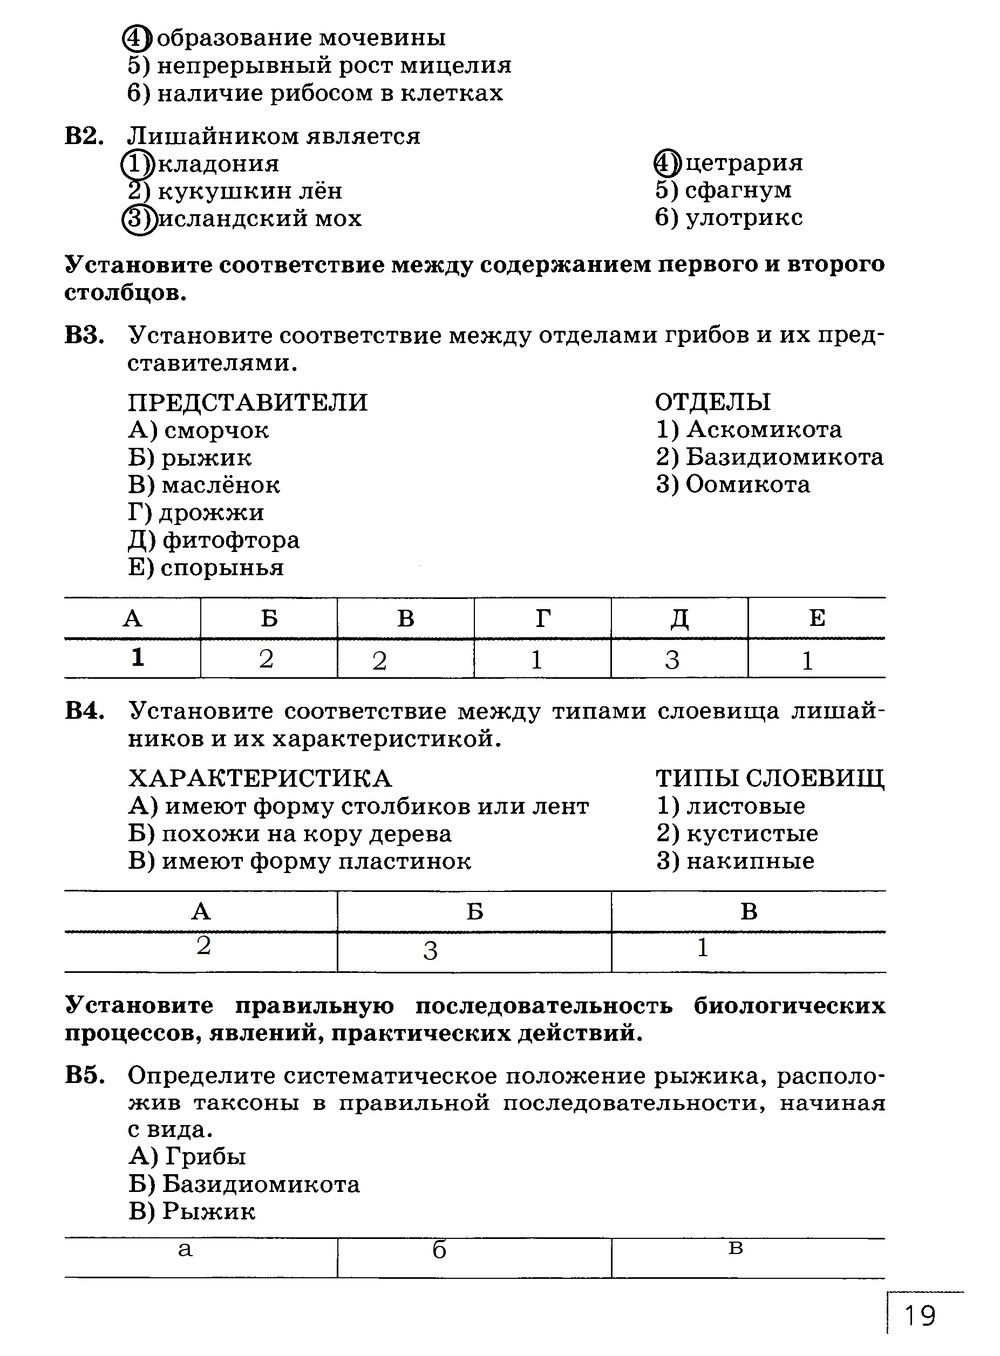 Рабочая тетрадь, 7 класс, Захаров В.Б., Сонин Н.И., 2015, задание: стр. 19